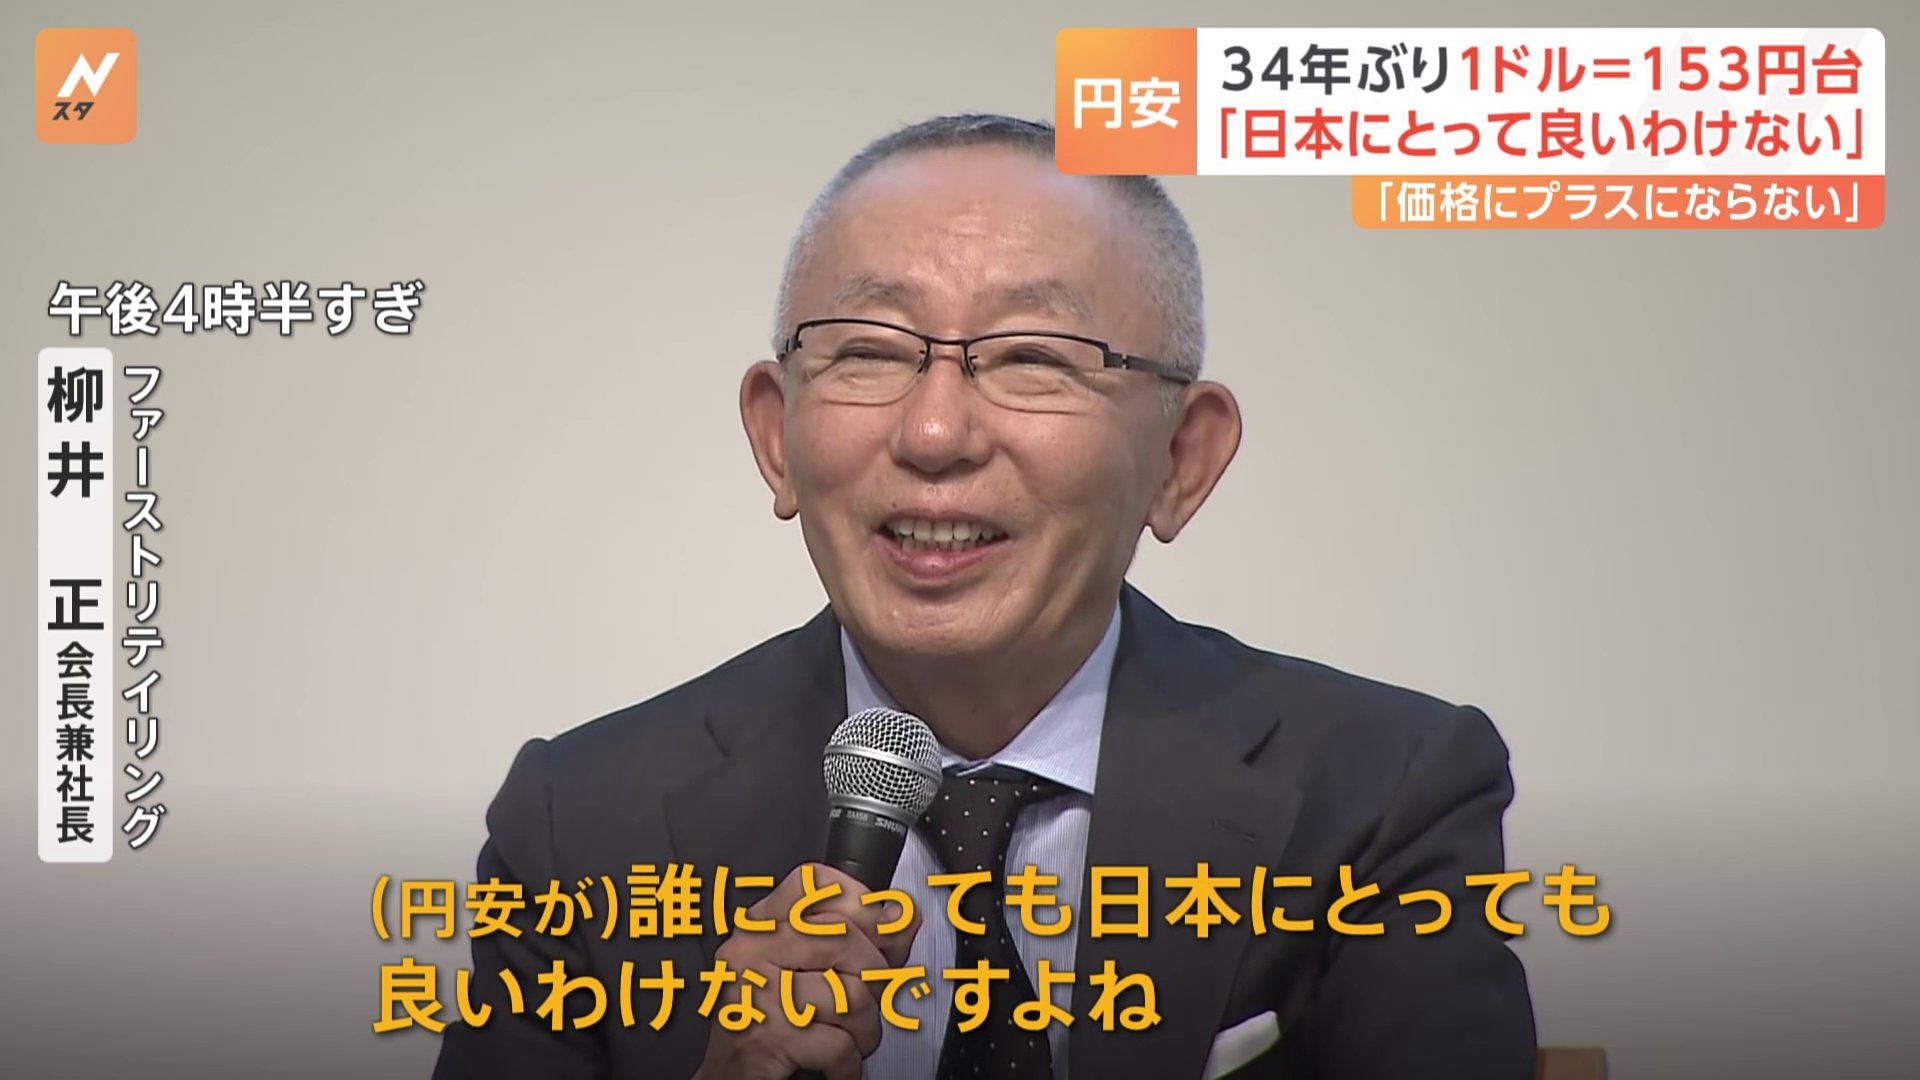 円安に柳井会長「日本にとって良いわけないですよね、これ」企業経営者から懸念の声